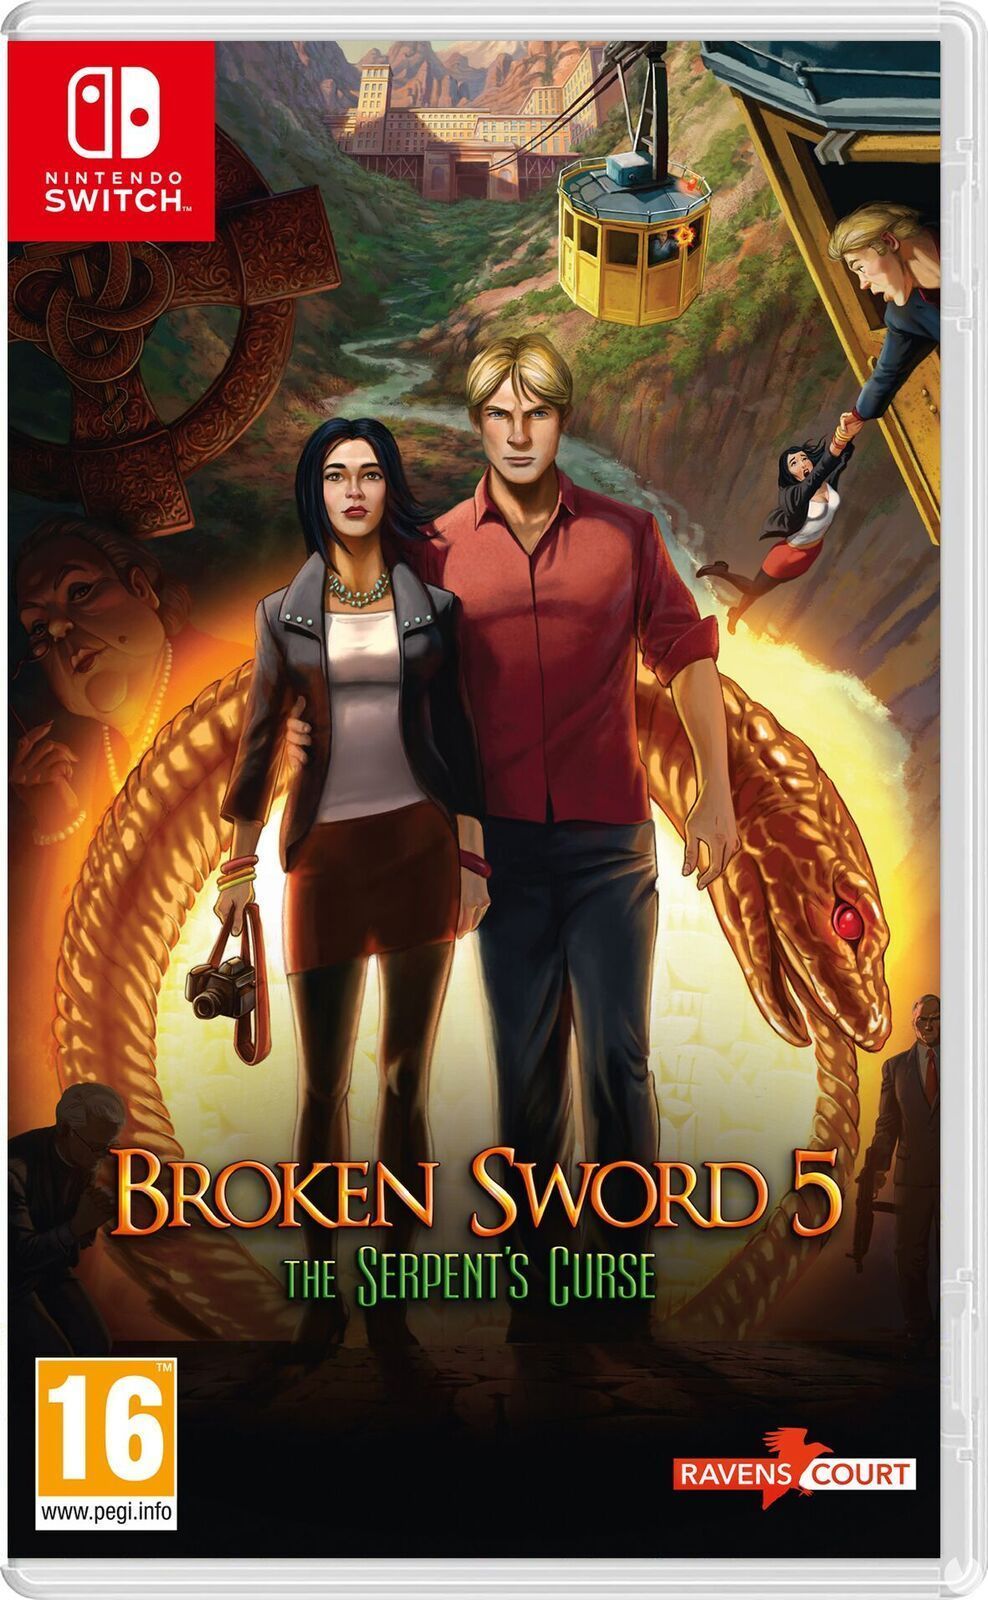 Broken Sword 5: La maldición de la serpiente llegará a Nintendo Switch